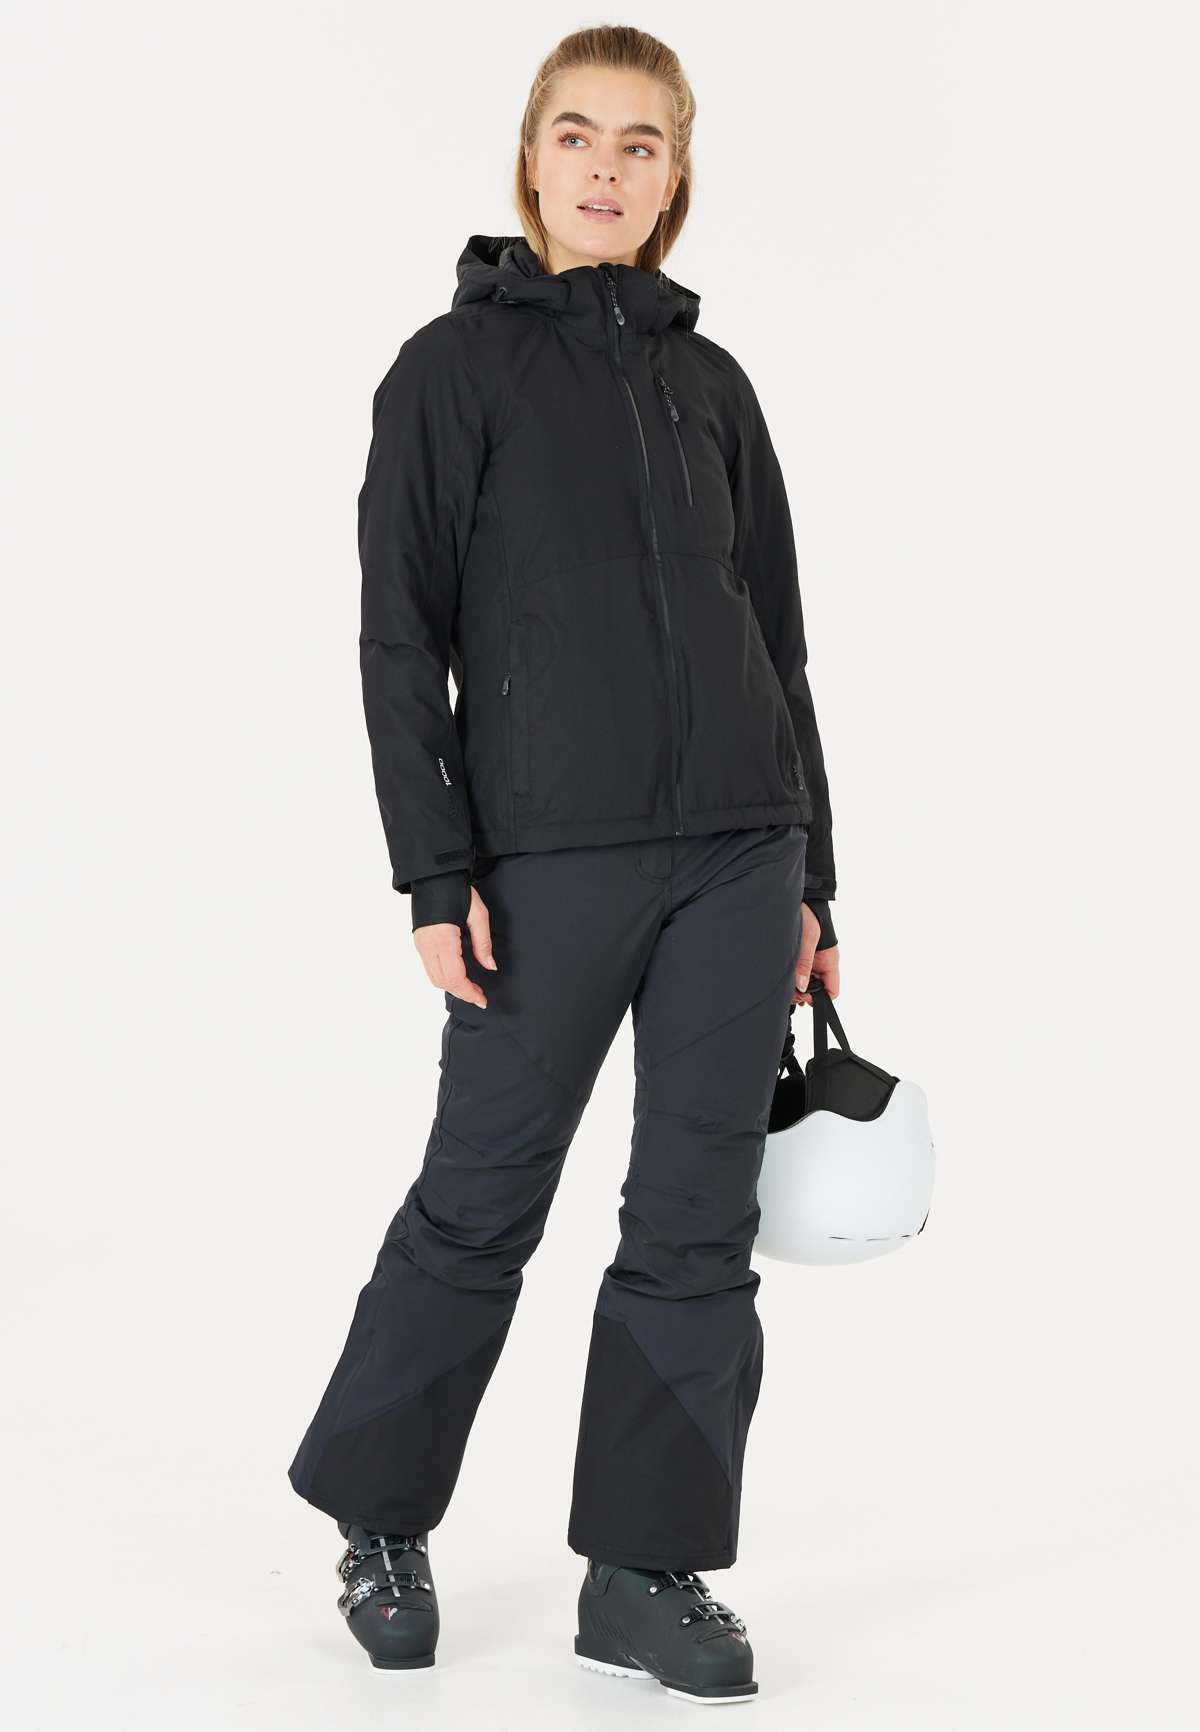 Лыжные брюки с особо высоким уровнем воды и теплой подкладкой.